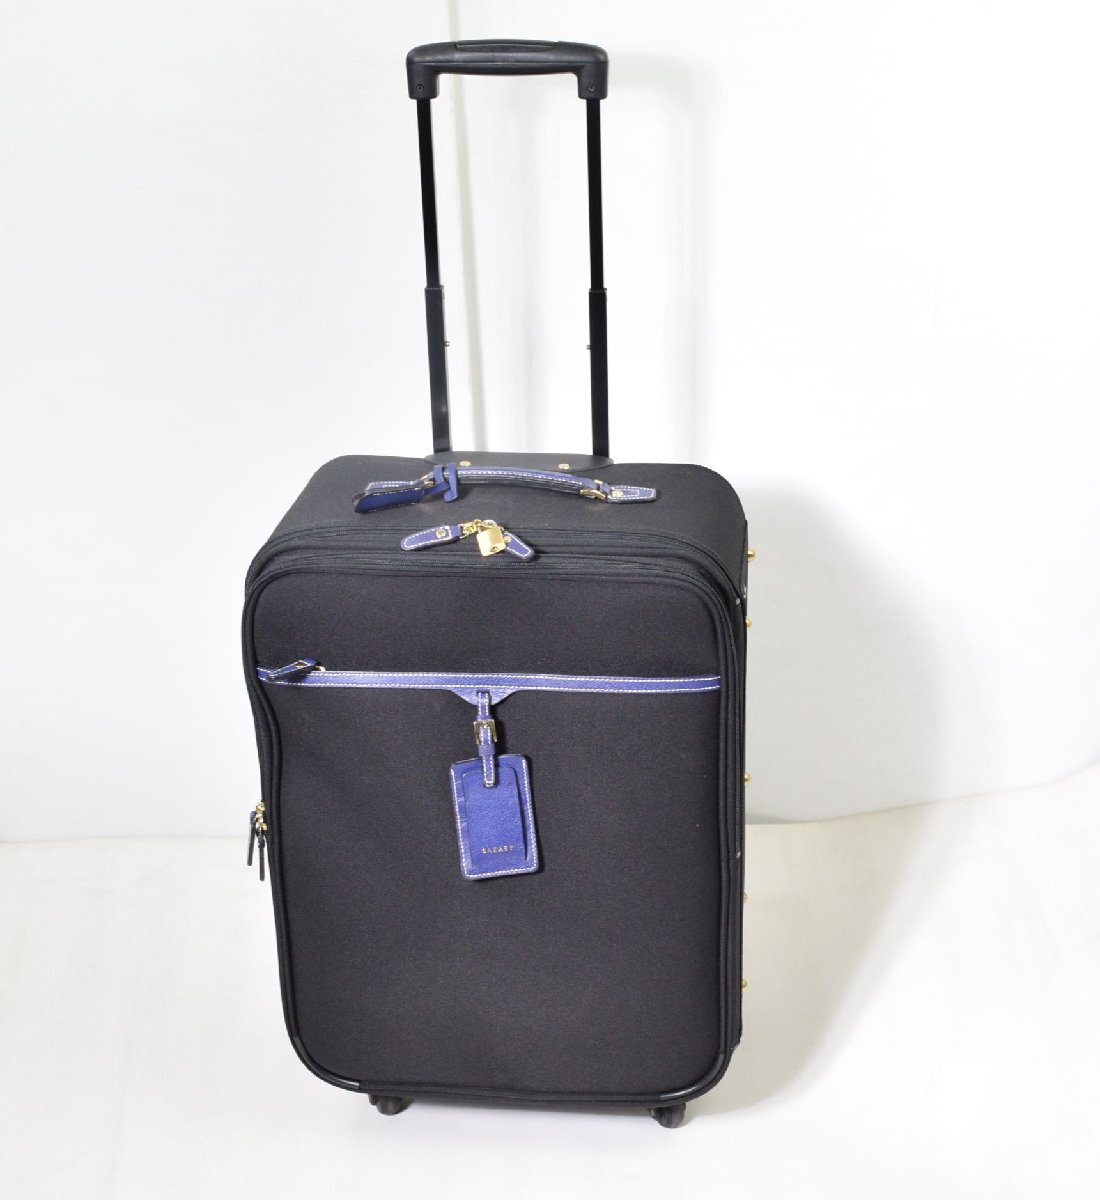 SAZABY（サザビー）スーツケース - 旅行用品